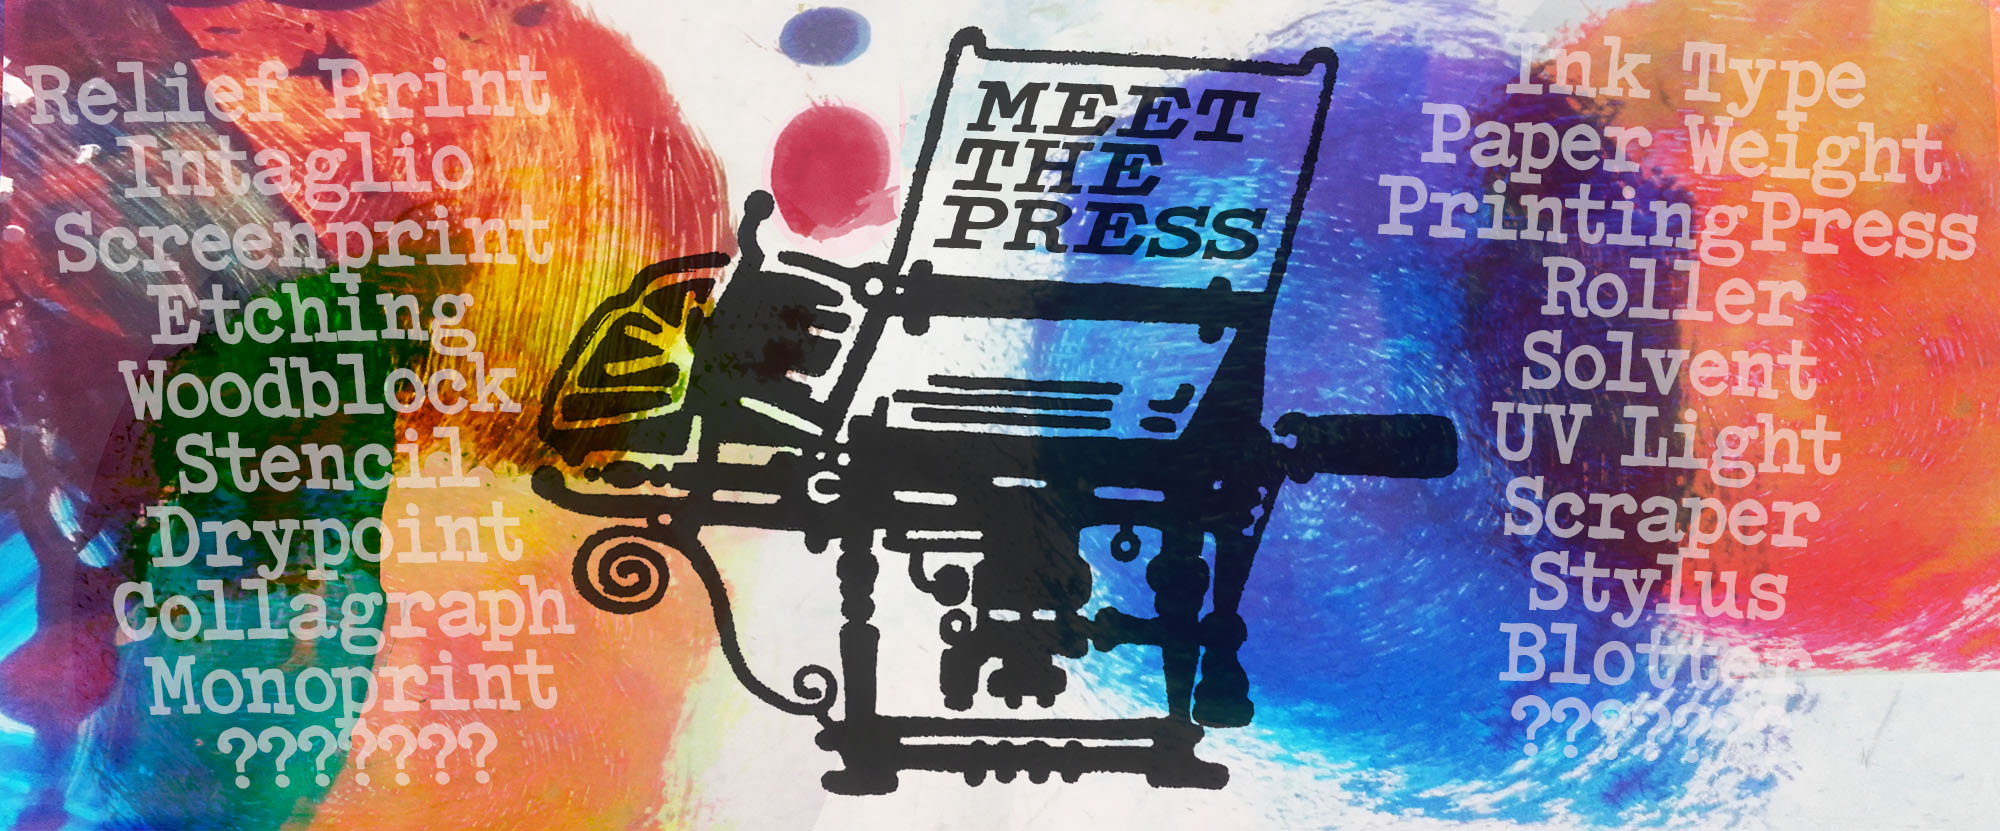 Meet the Press (03/07)